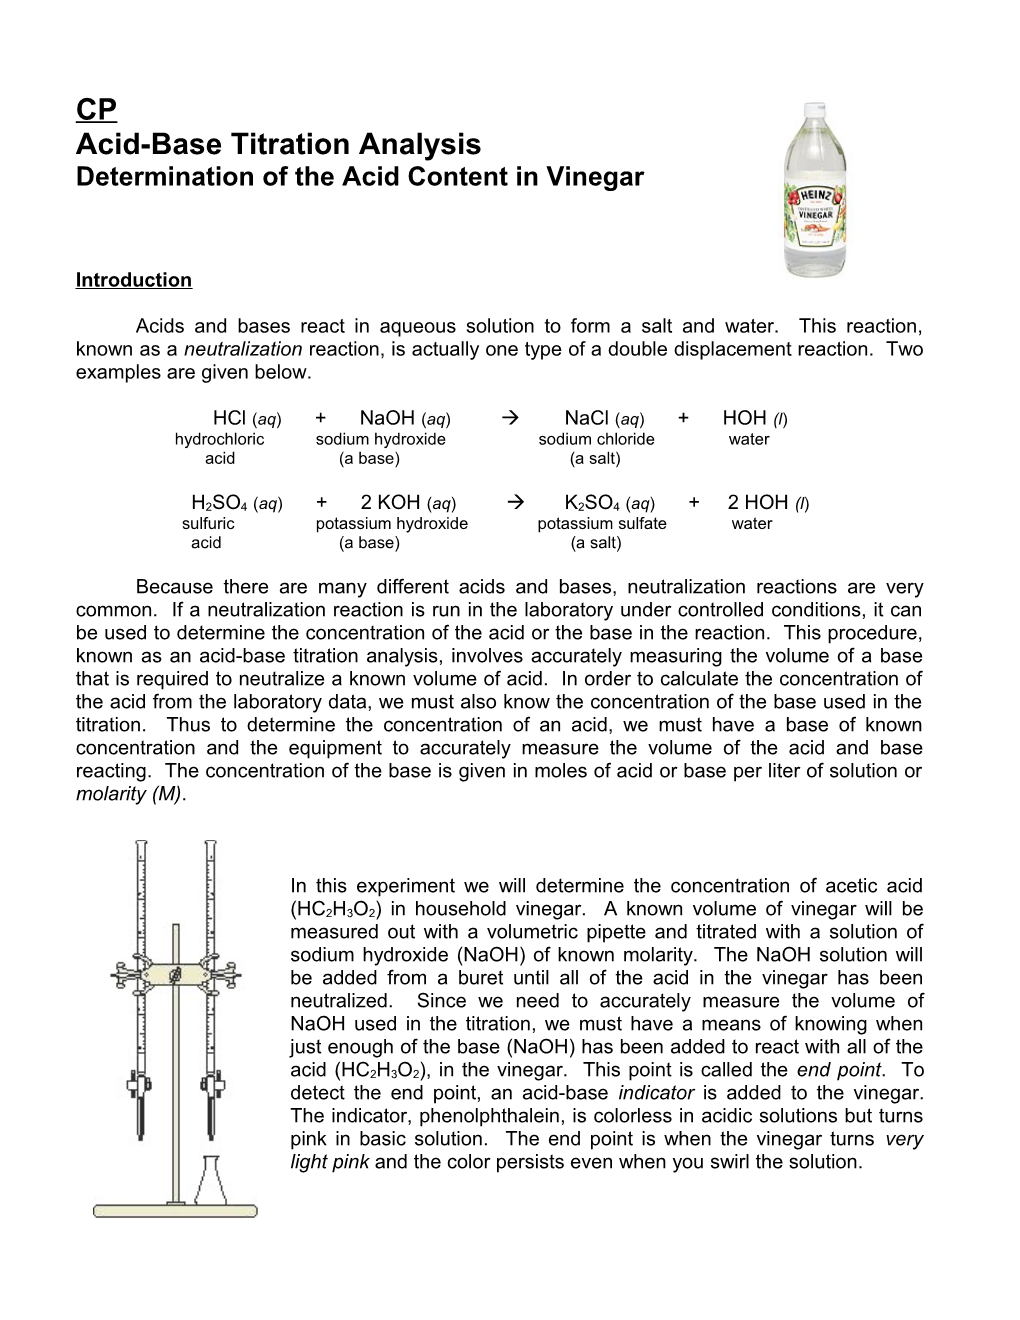 Acid-Base Titration Analysis